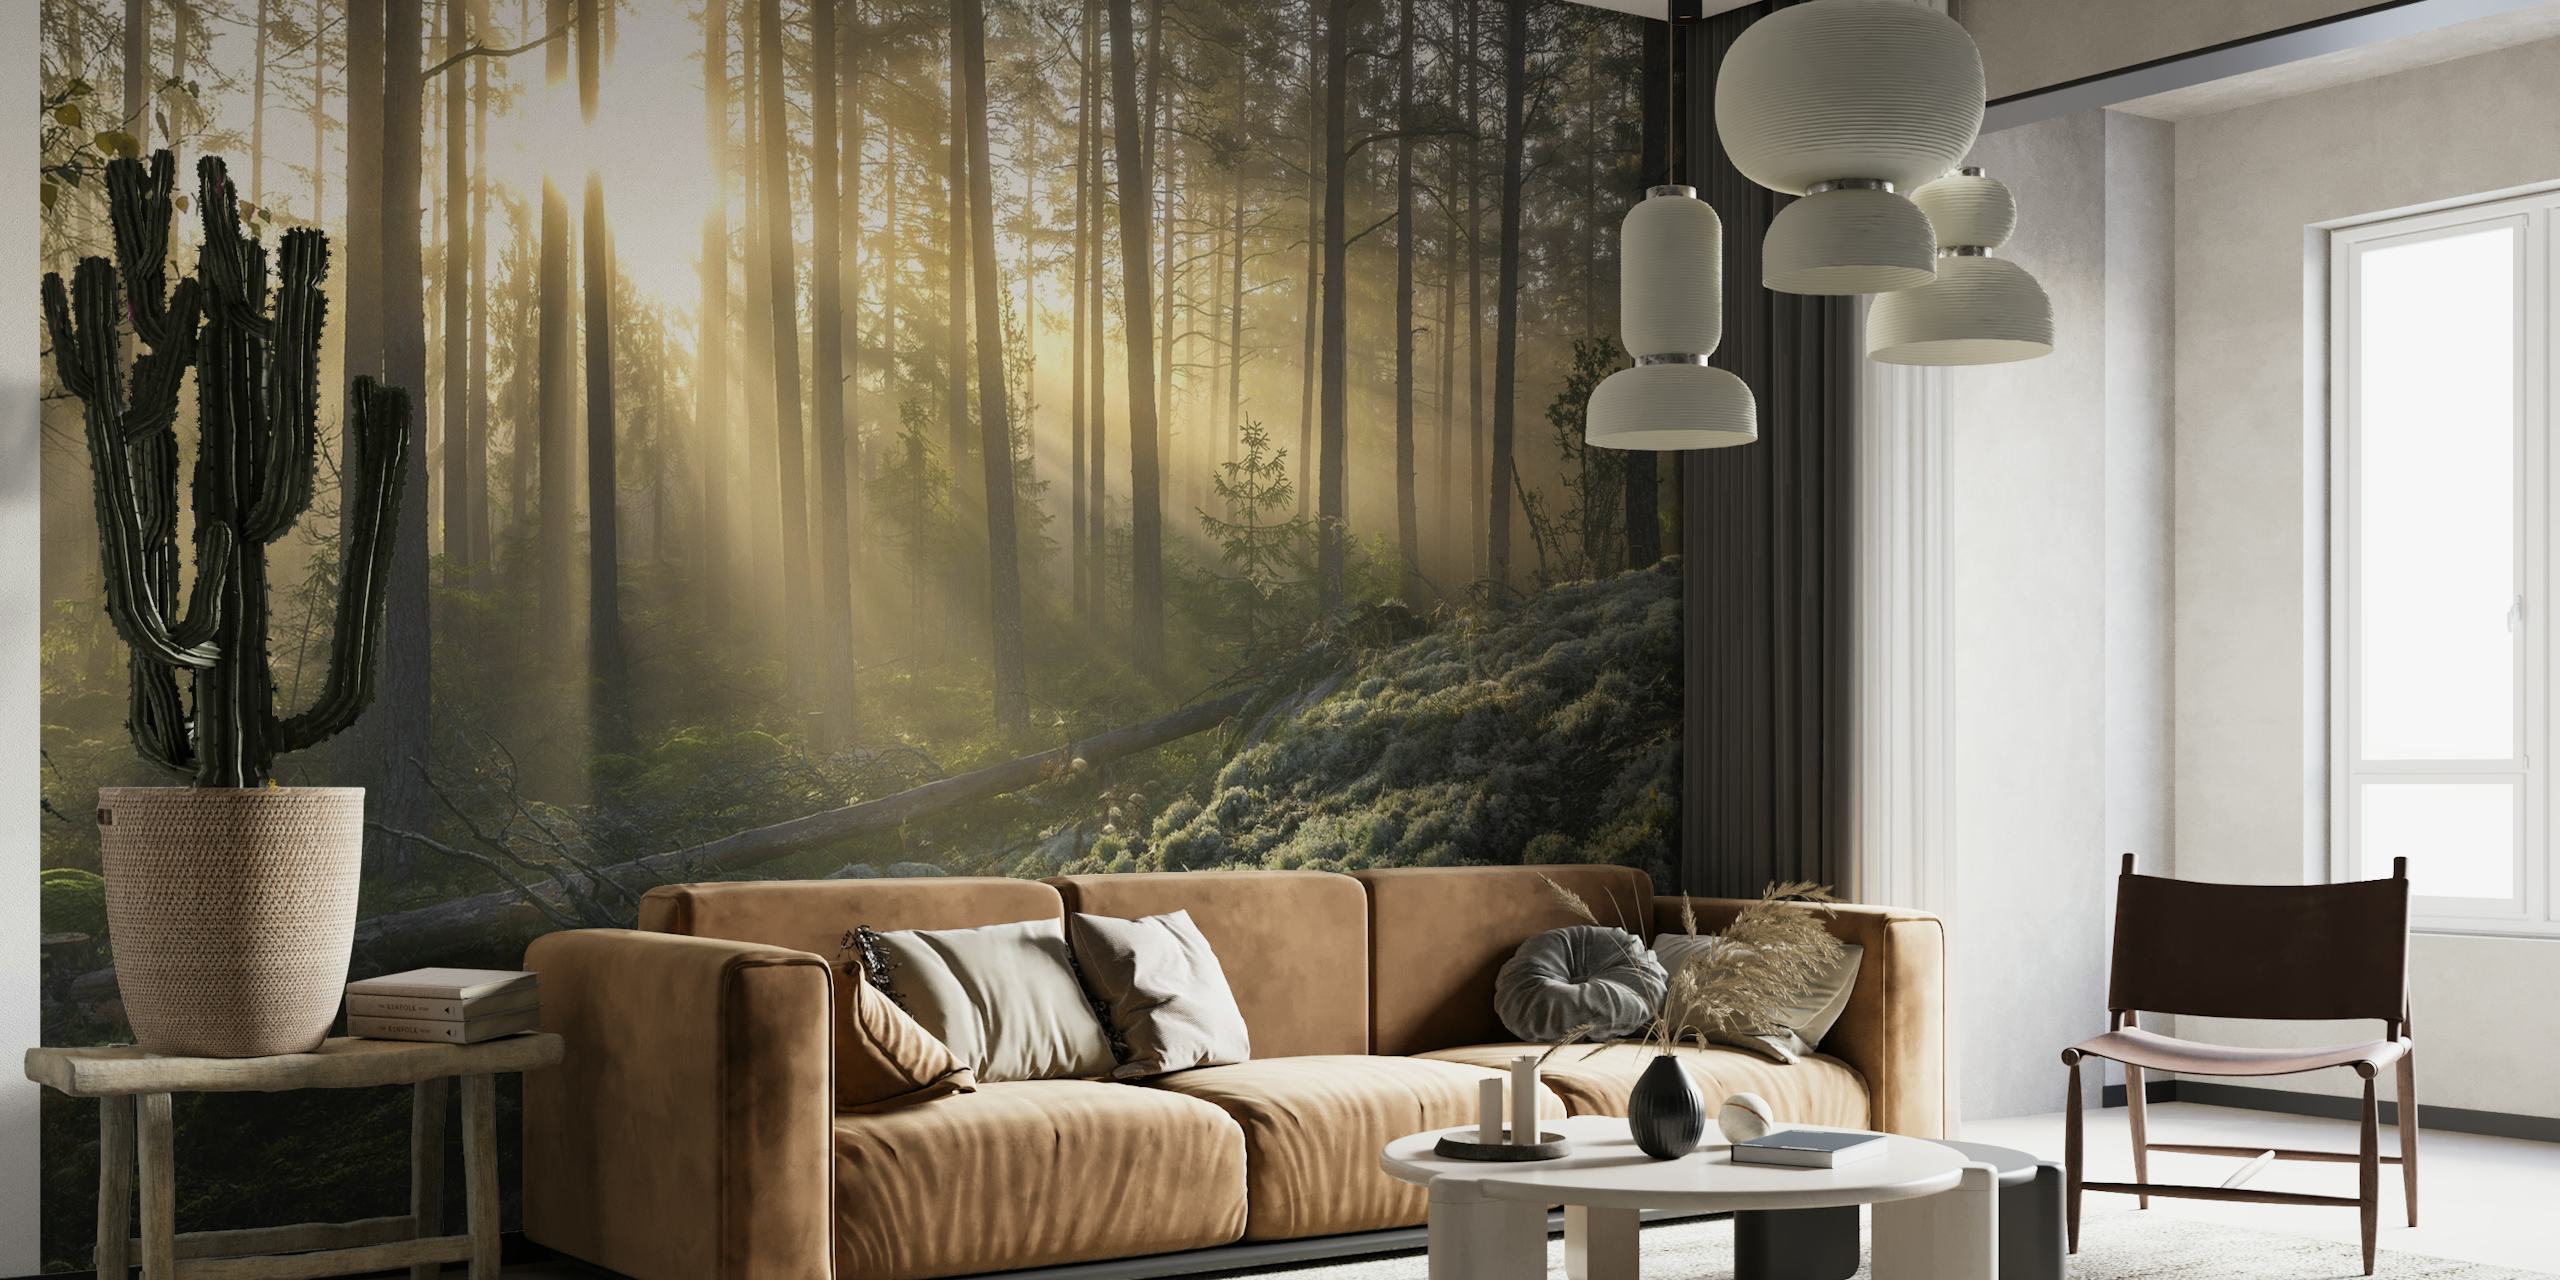 Foresta nebbiosa con luce solare che permea gli alberi e murale in primo piano con muschio bianco